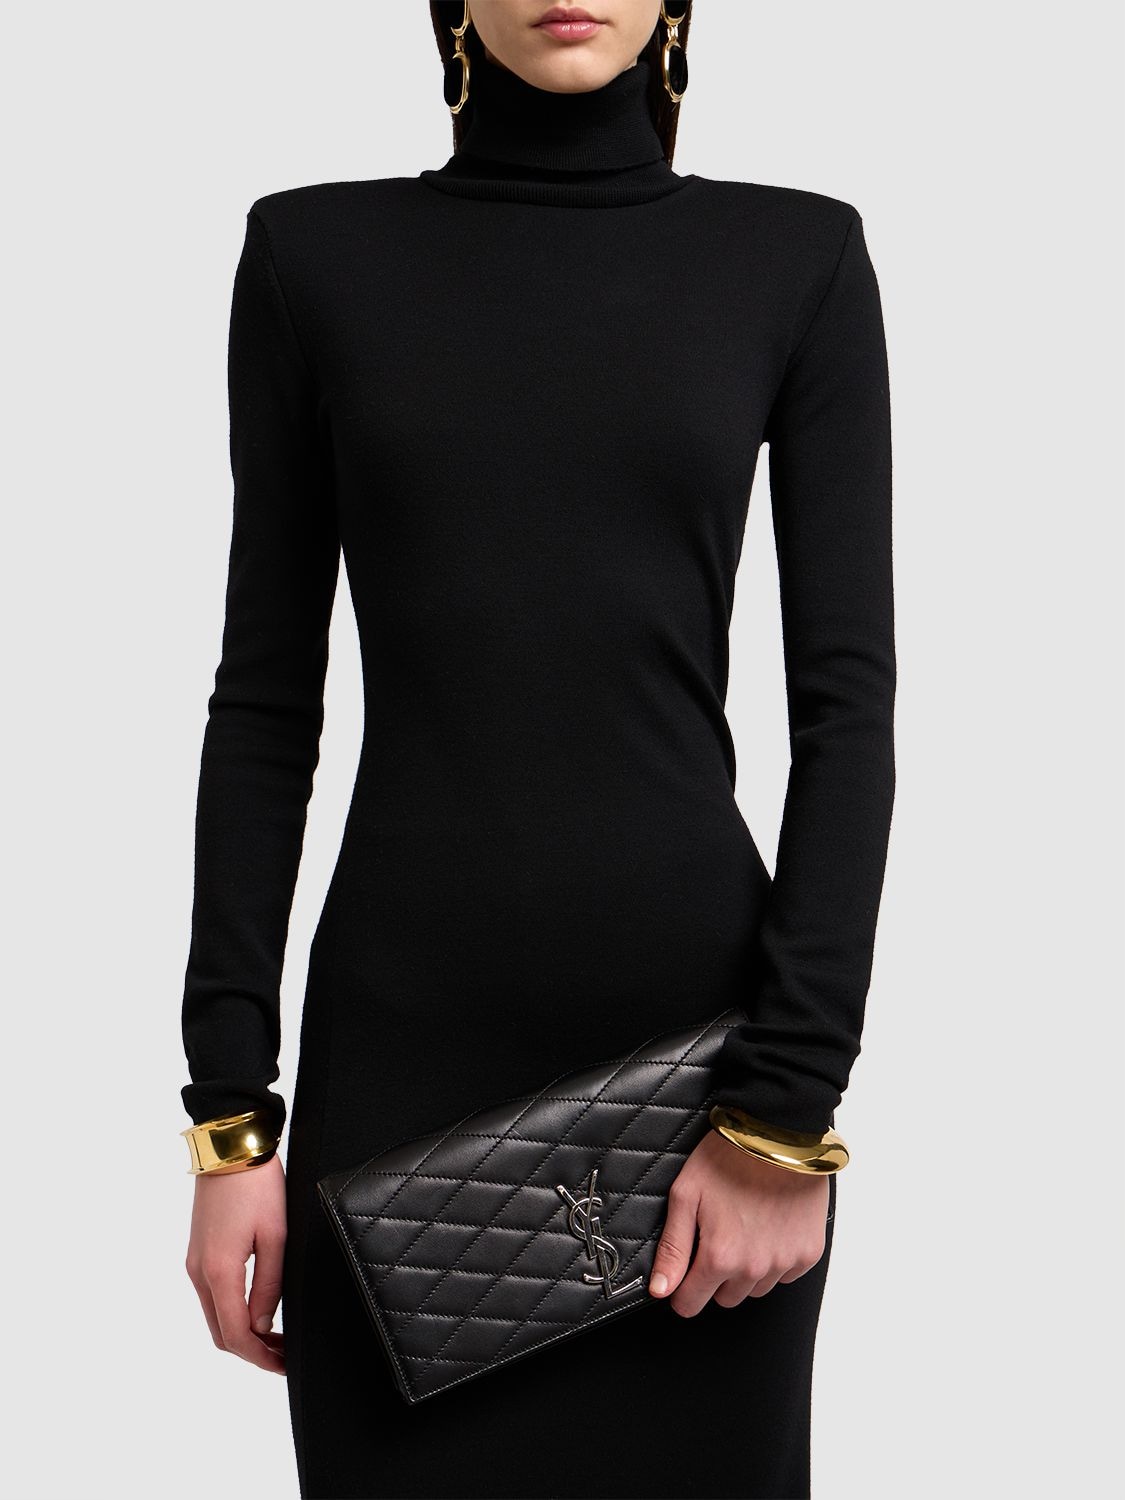 Shop Saint Laurent Kate Leather Clutch In Black